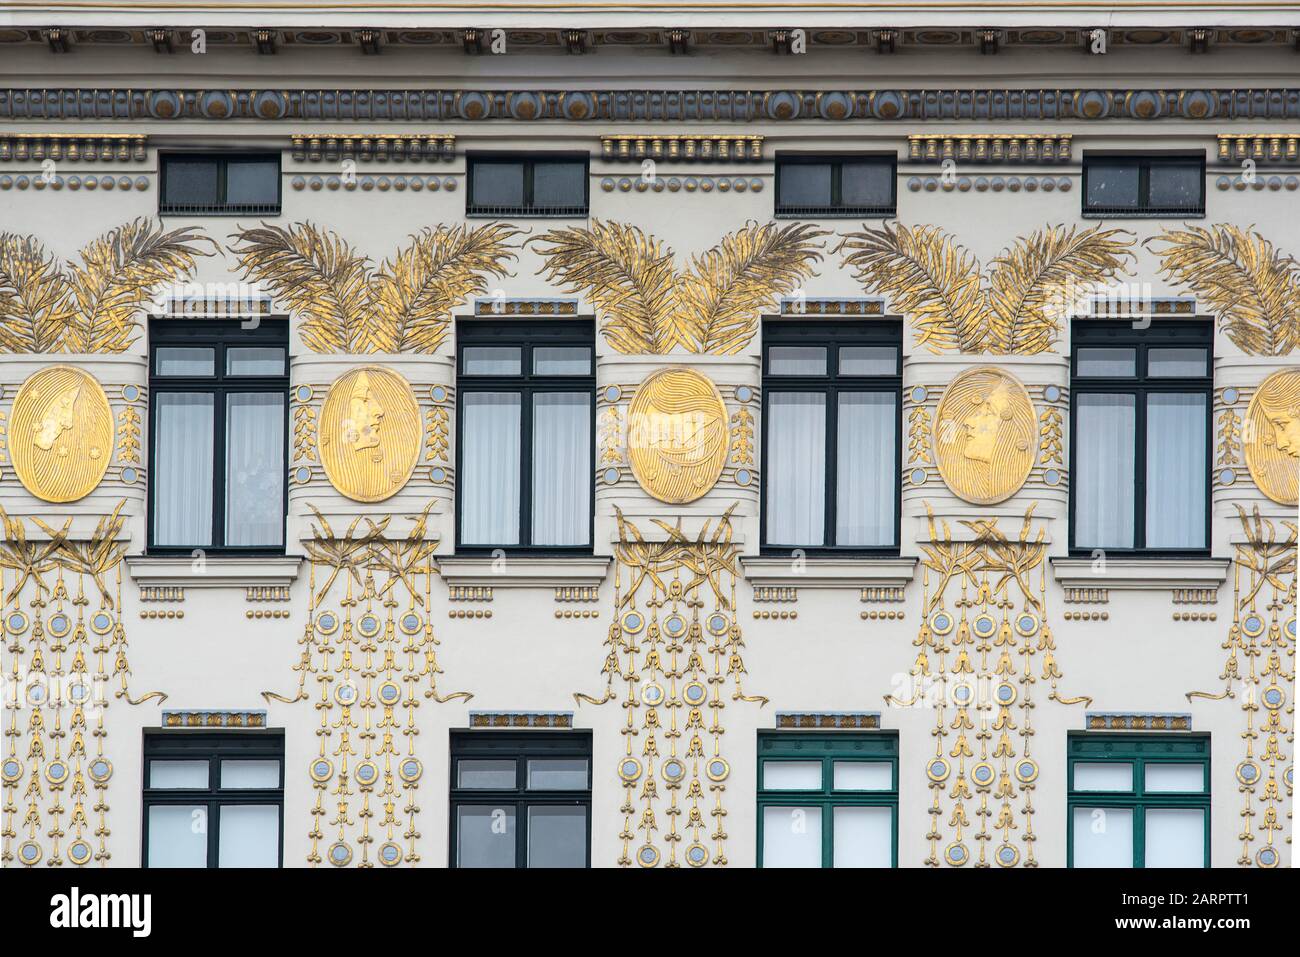 Vienne, Autriche - 6 juin 2019 ; détail de la maison de muses de Wagner conçue par Otto Wagner, avec une riche ornementation dorée conçue par Koloman Moser an Banque D'Images